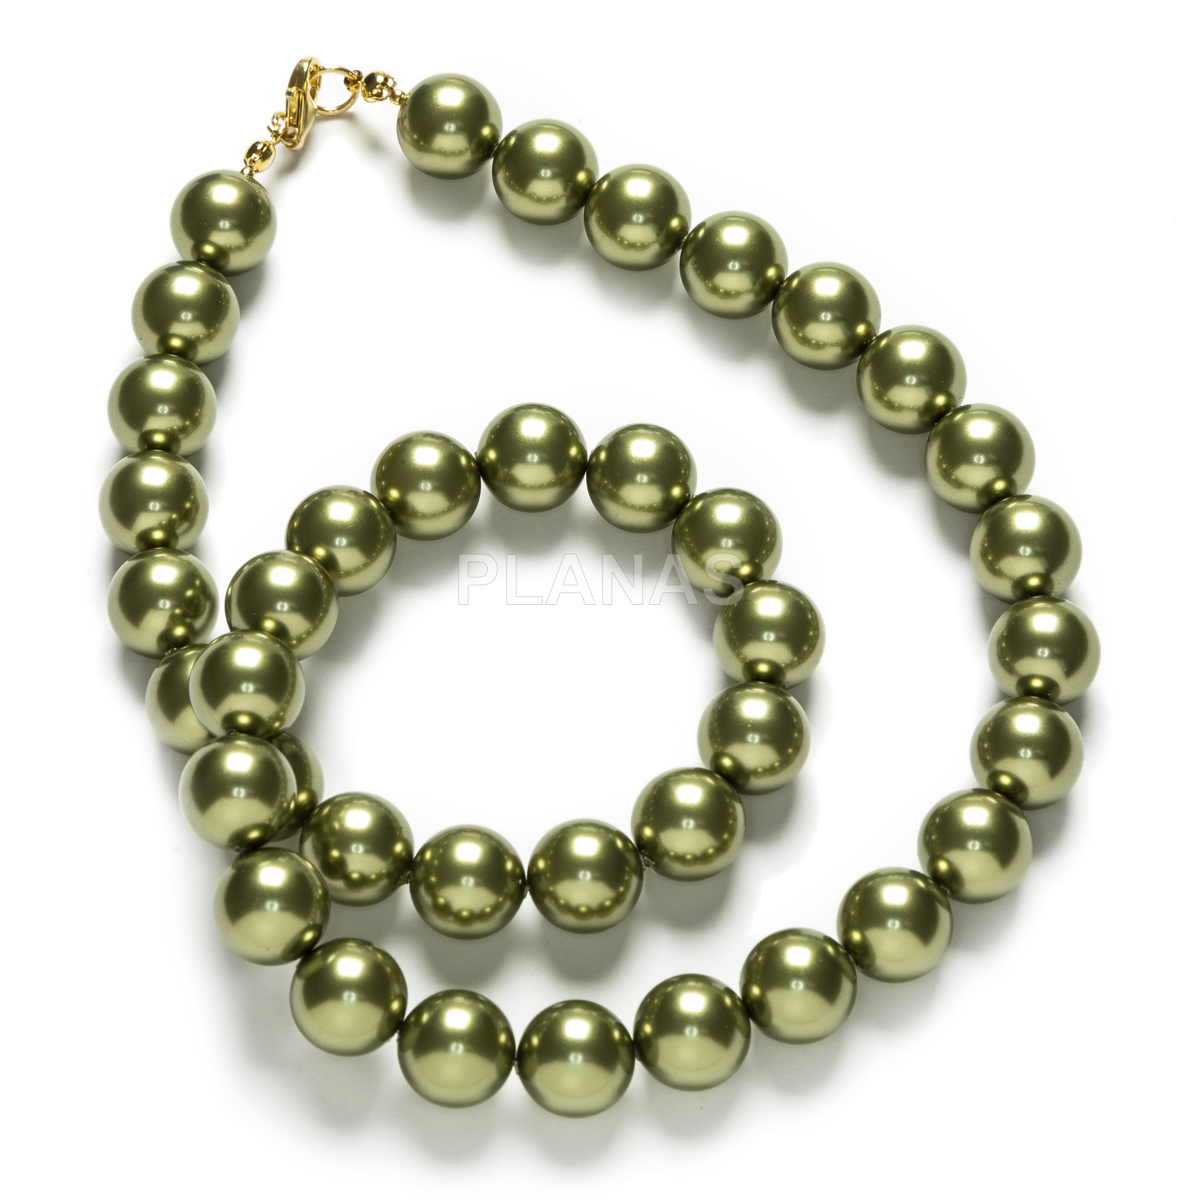 Conjunto de Collar, Pulsera y Pendientes en Plata de ley y Baño Oro Perlas de primera calidad en 12mm. Color Verde Oliva.